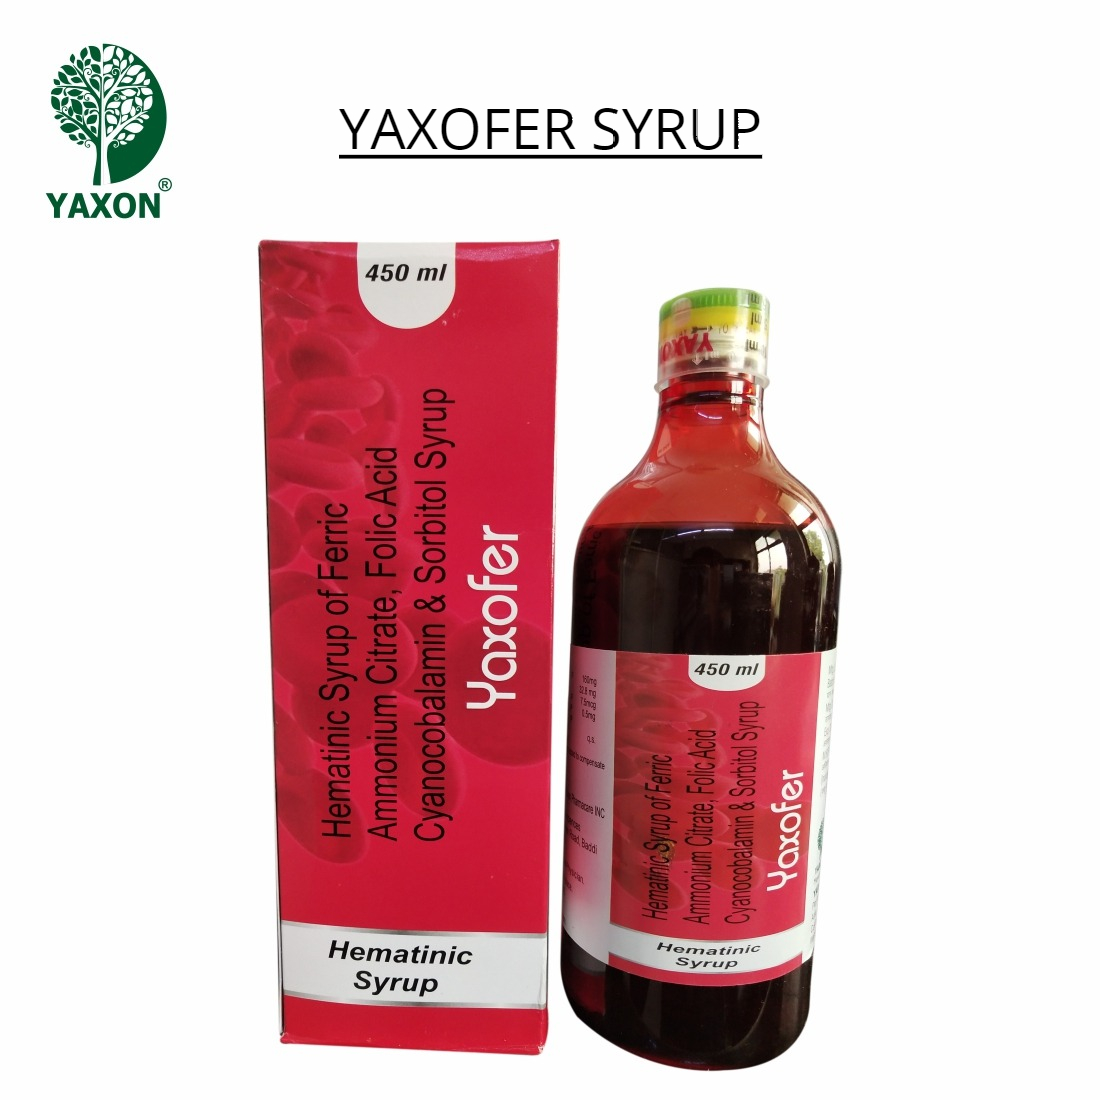 YAXON YAXOFER Hematinic Syrup 450ml